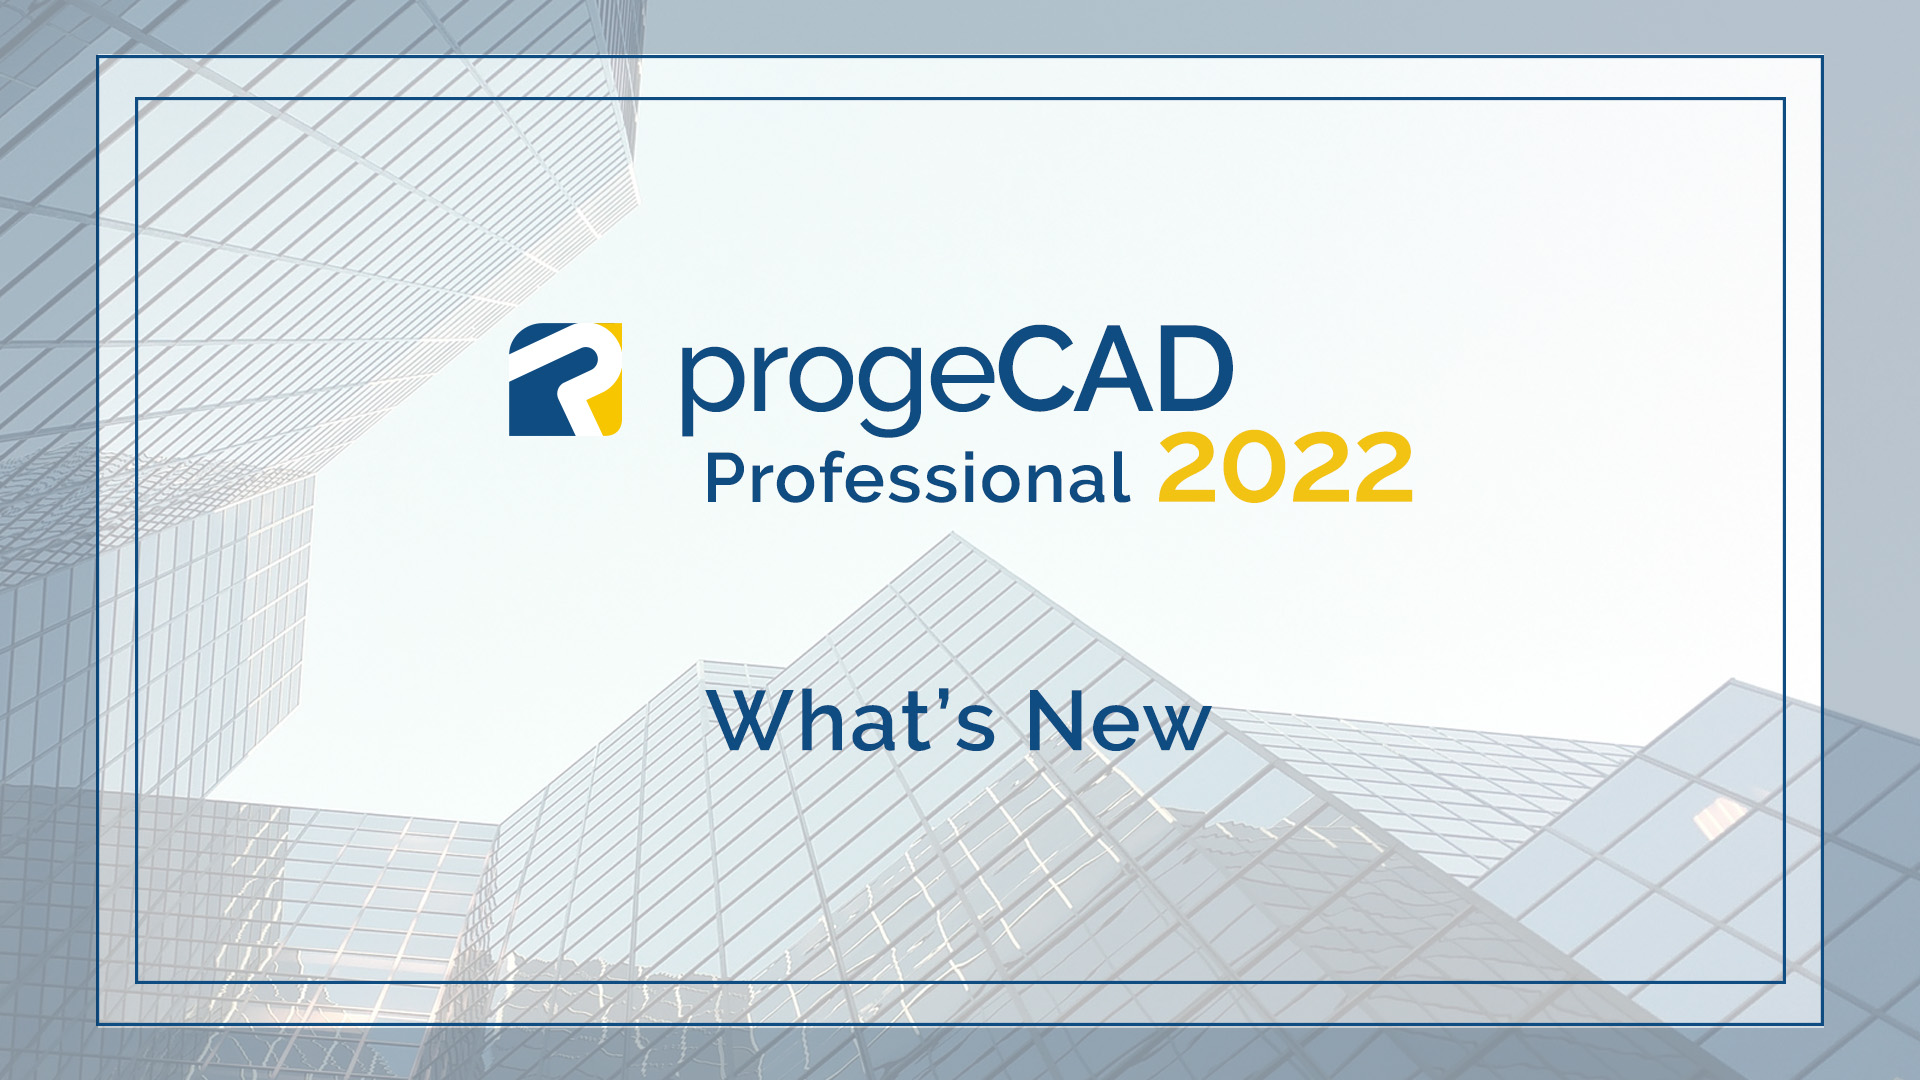 progeCAD 2022 - What's New